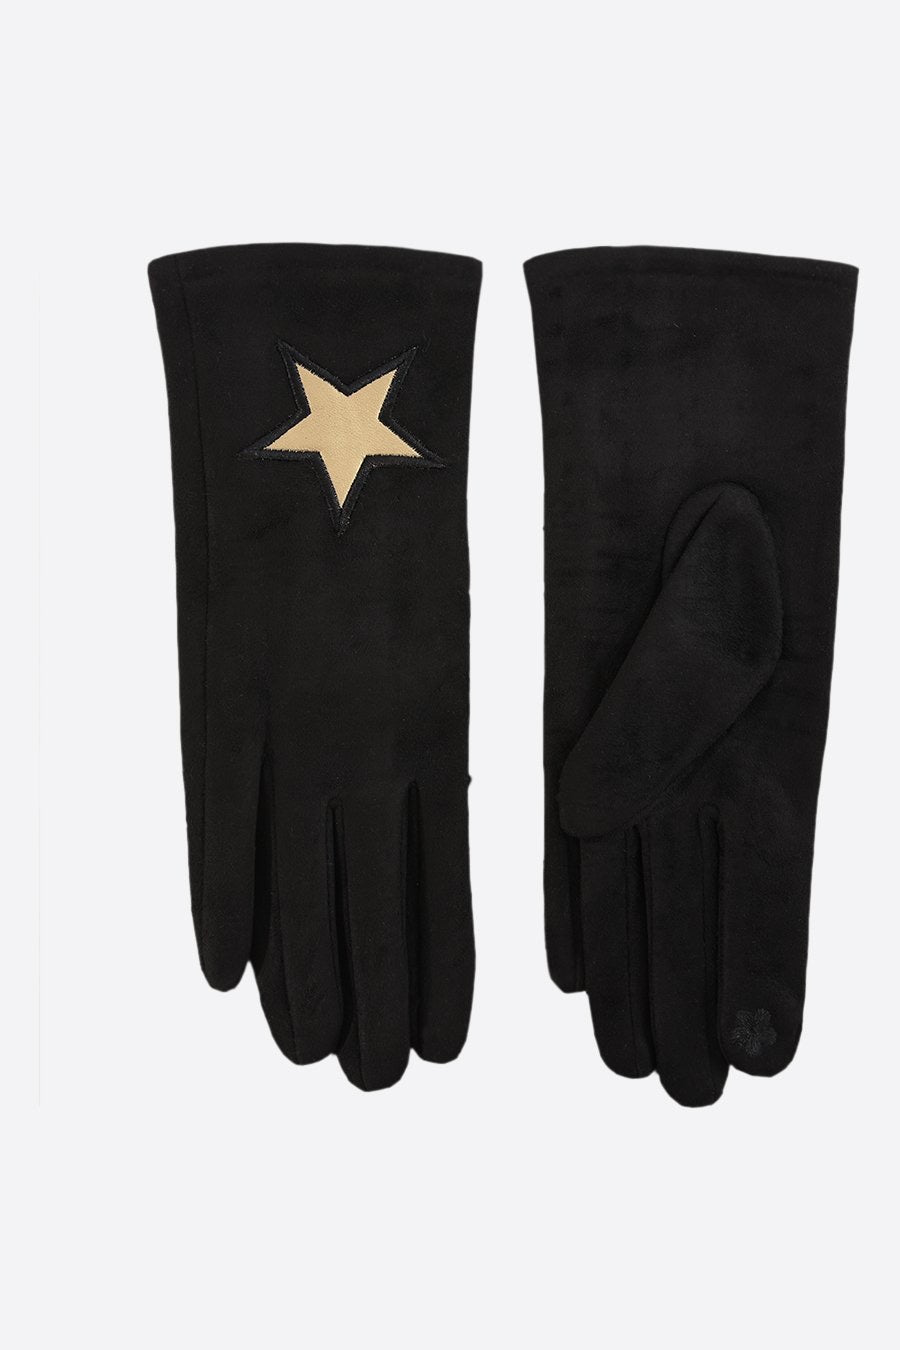 Dark Grey Gloves With Gold Star